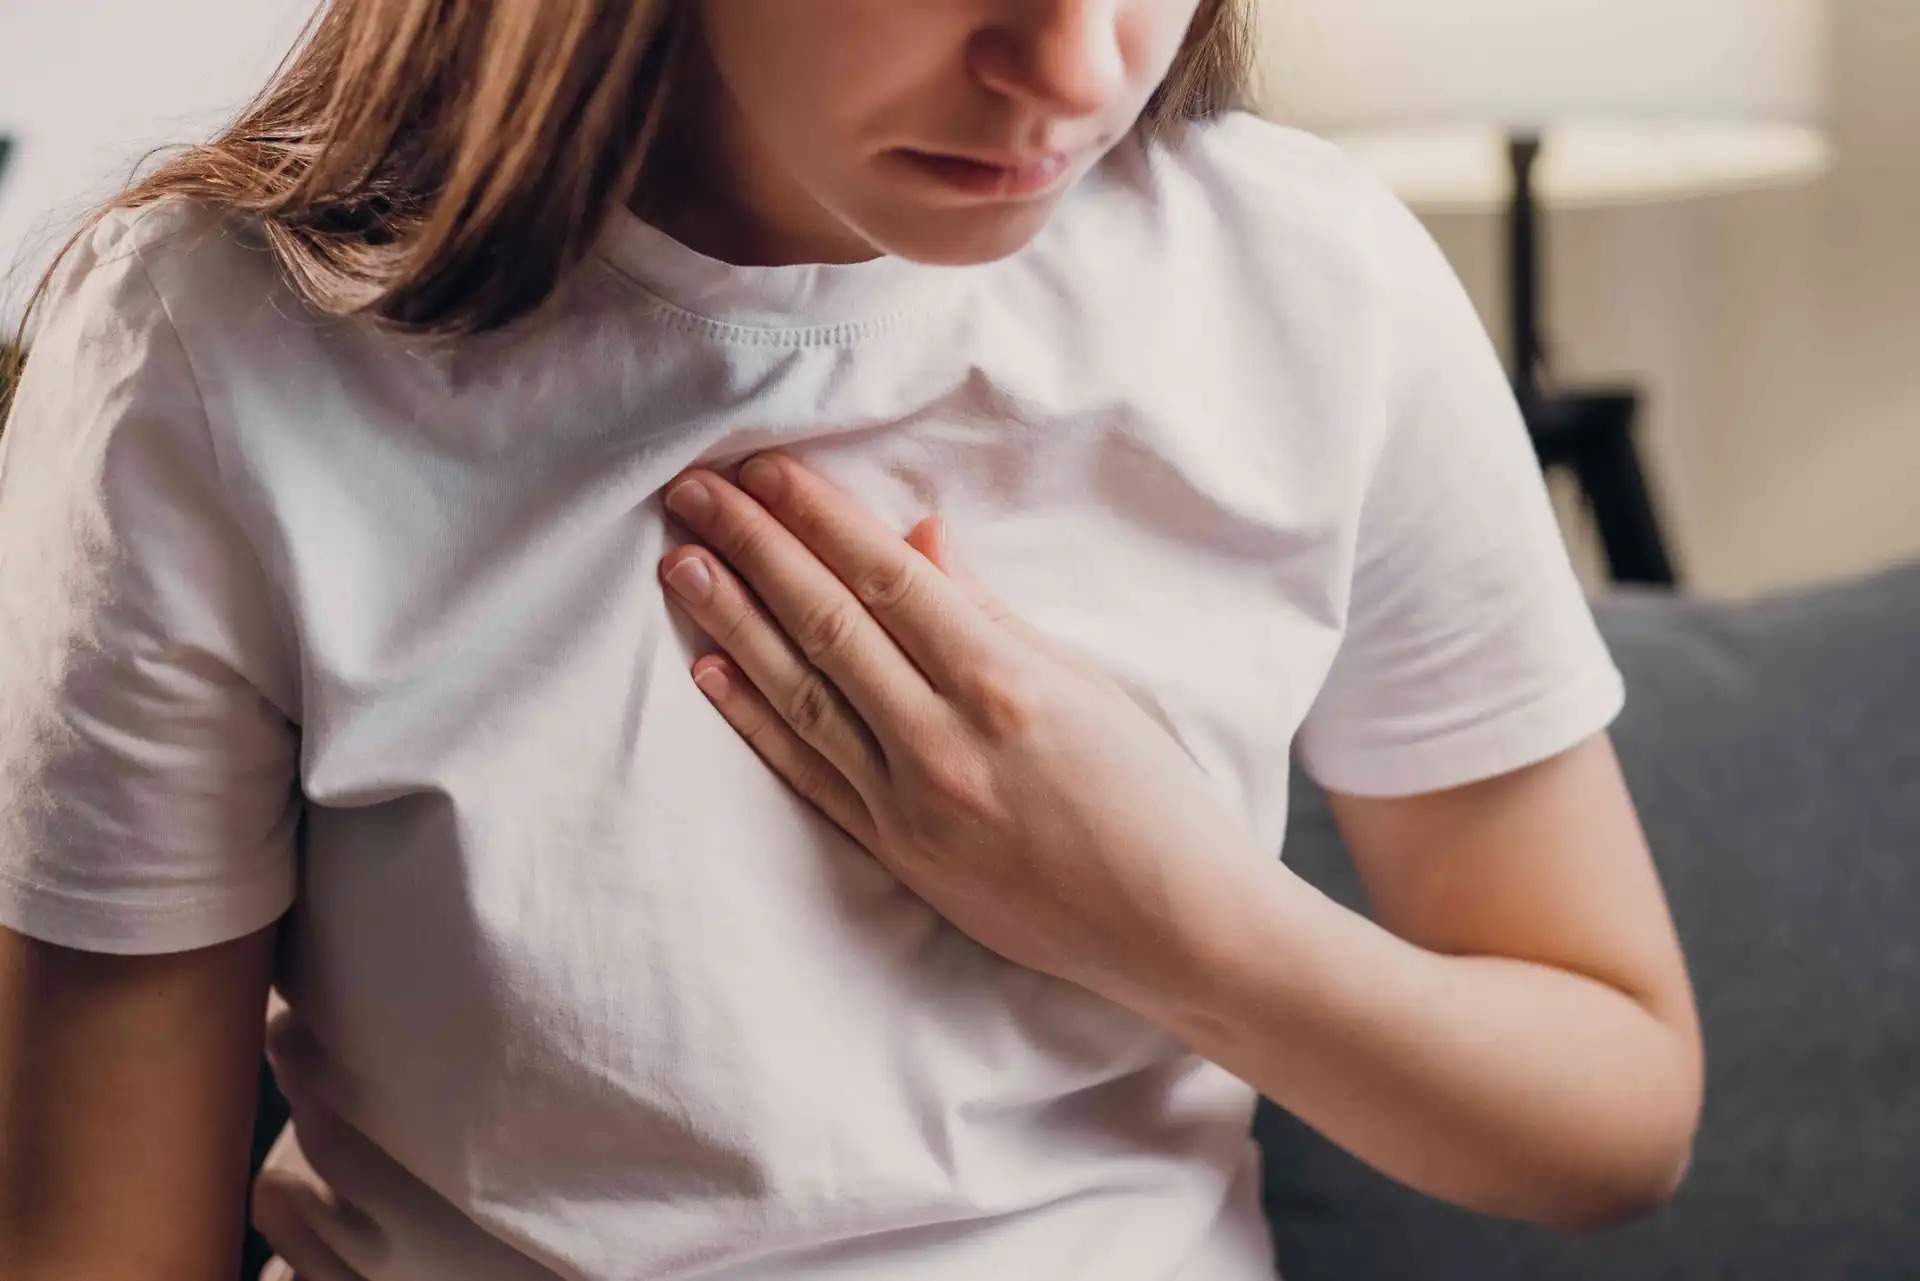 crise cardiaque - Welche Warnzeichen weisen auf einen Herzinfarkt hin?